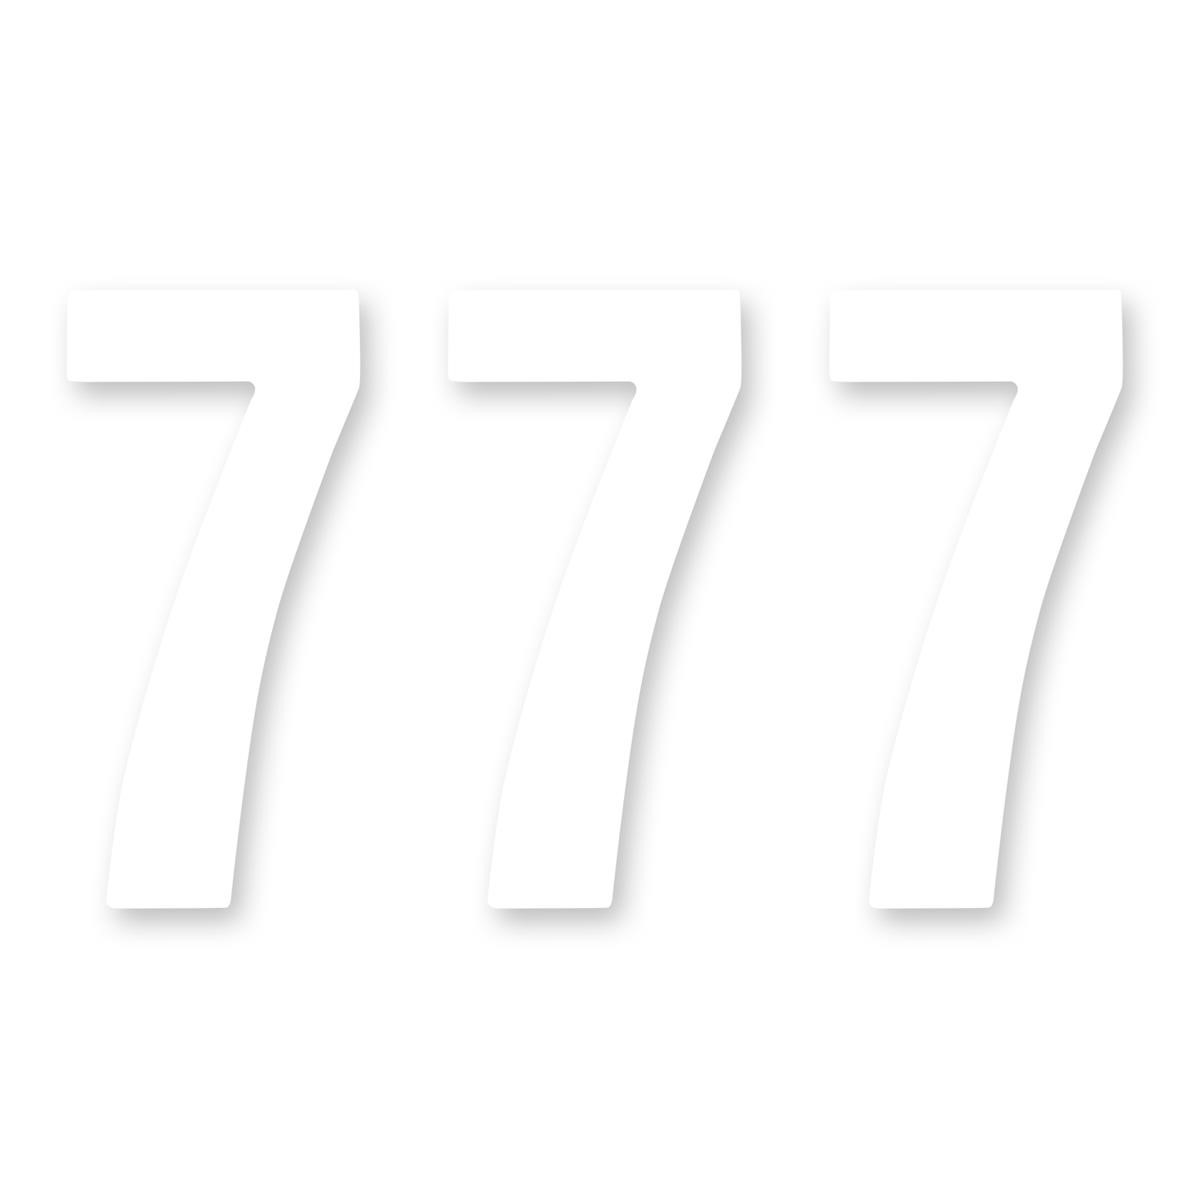 ZAP Kit Numéro Competition Standard Number 7, White, 15 cm, 3 pieces